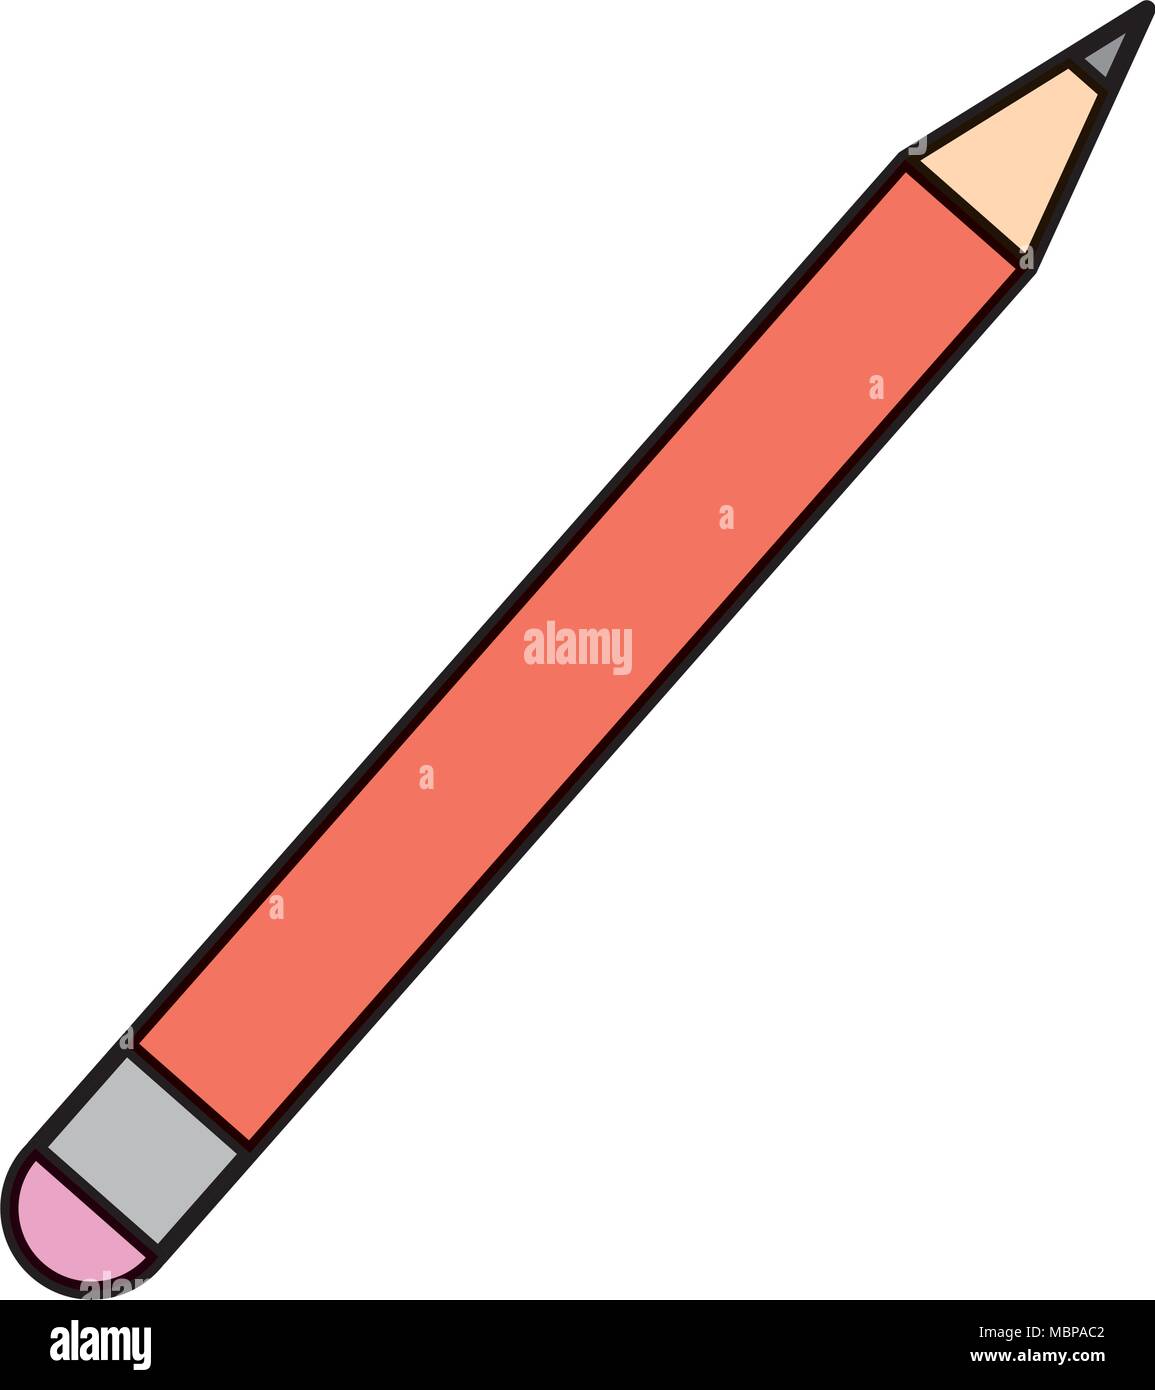 Crayon de couleur de l'objet de l'école de dessin et d'écriture Image  Vectorielle Stock - Alamy